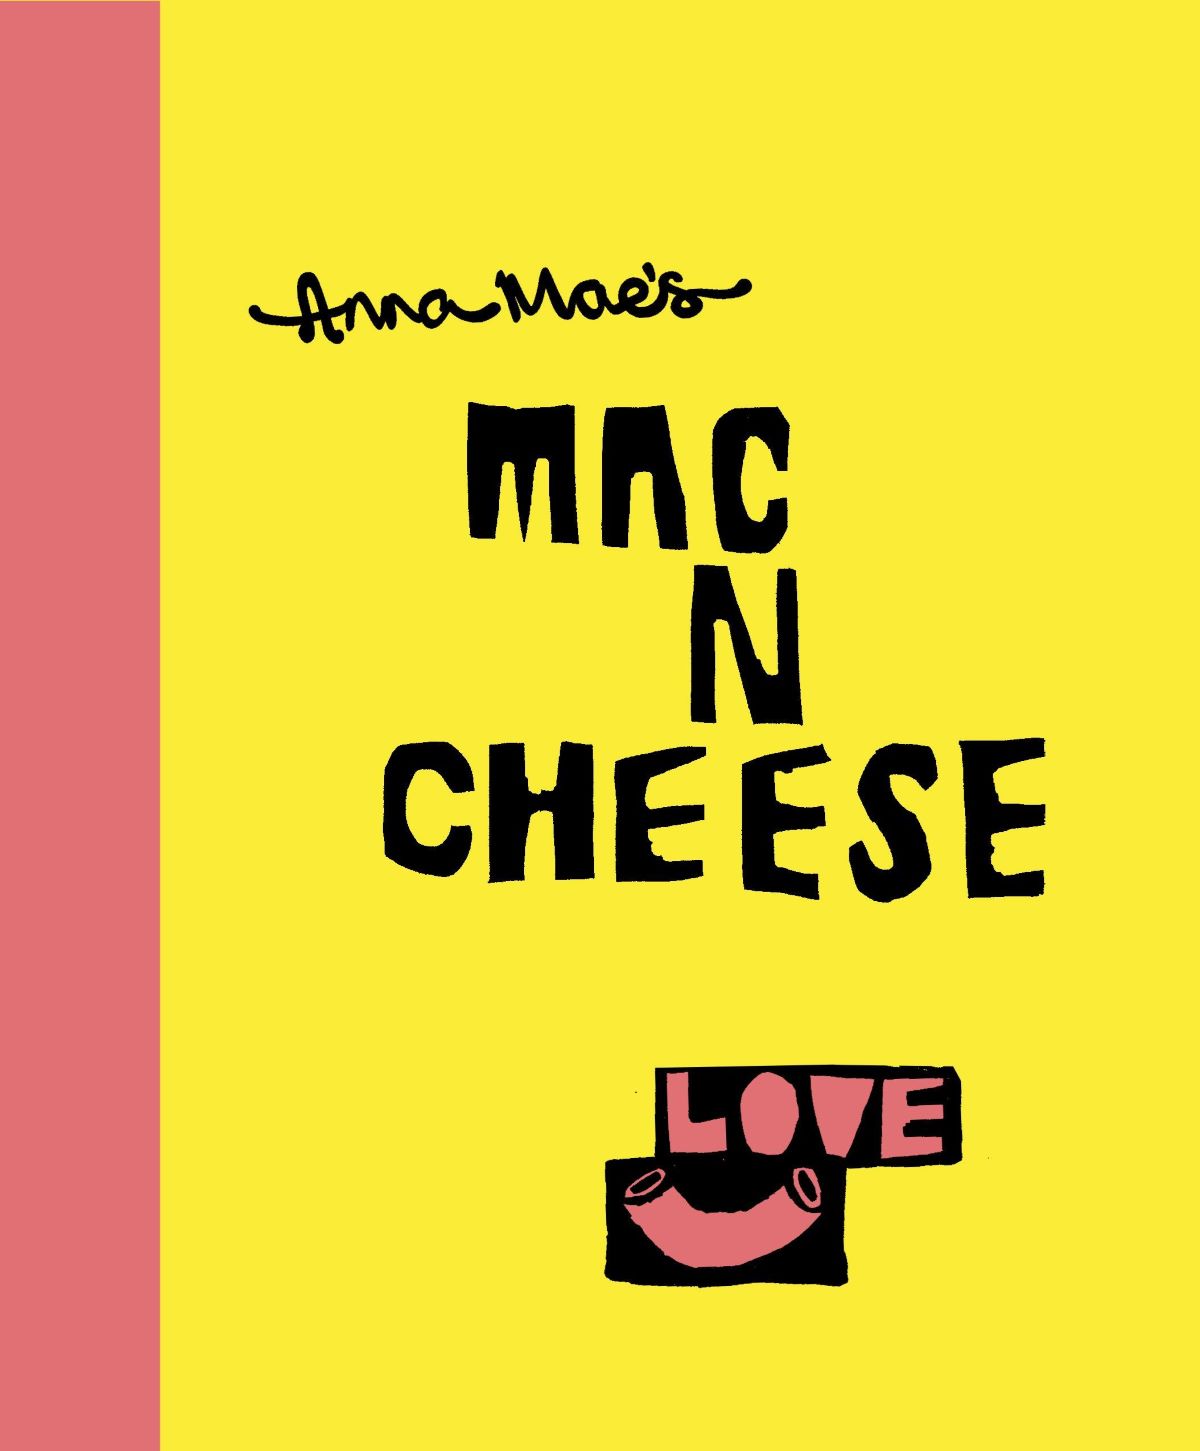 Anna Maes Mac and Cheese